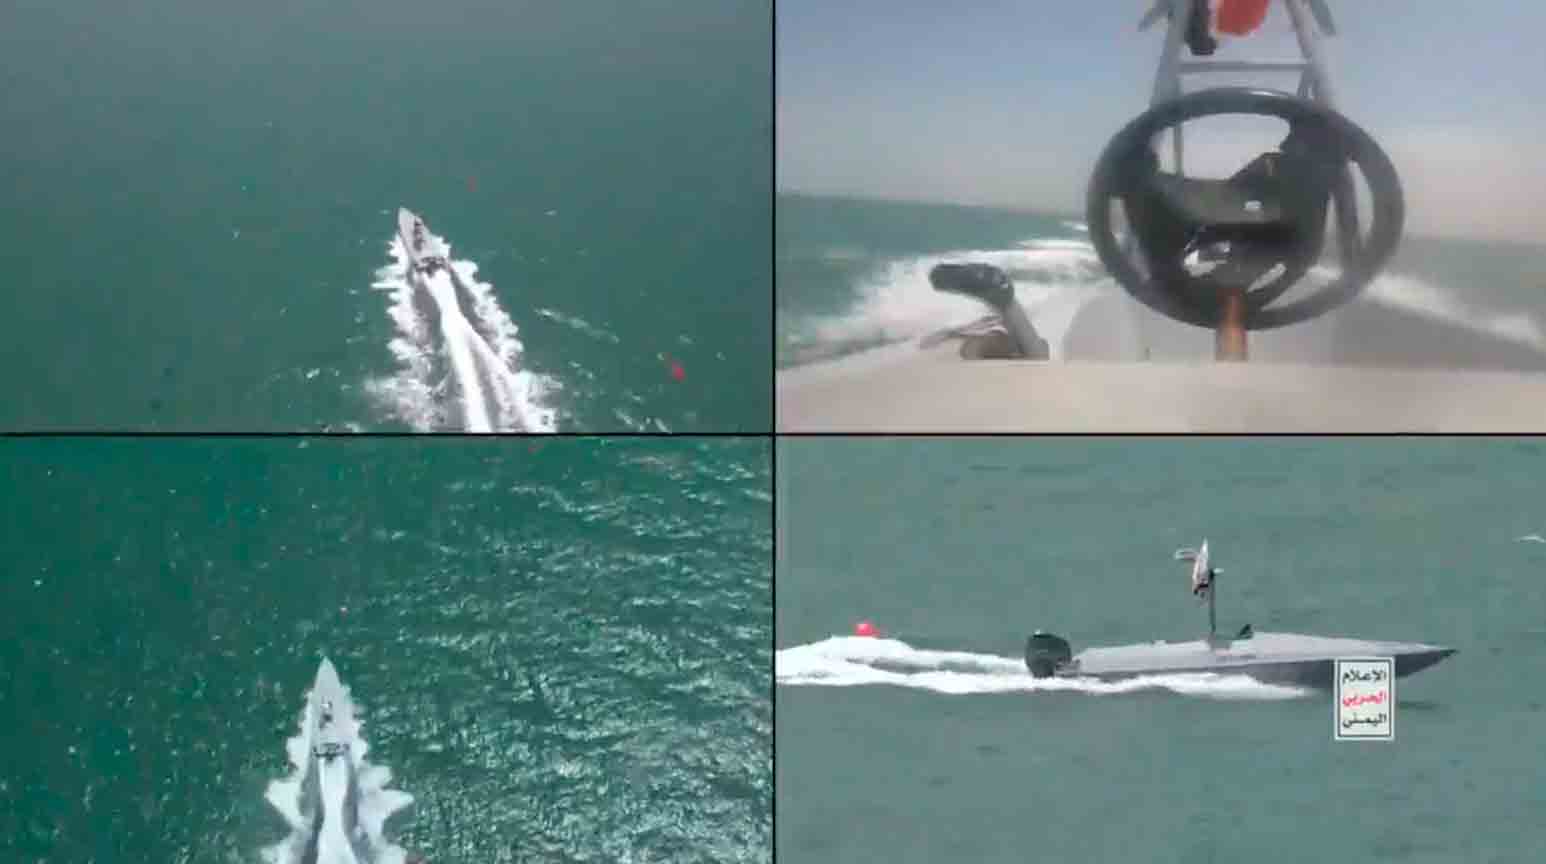 Houthis divulgam vídeo de novo drone naval que atacou embarcação no Mar Vermelho. Fotos e Vídeo: Reprodução Houthi Media MMY.YE